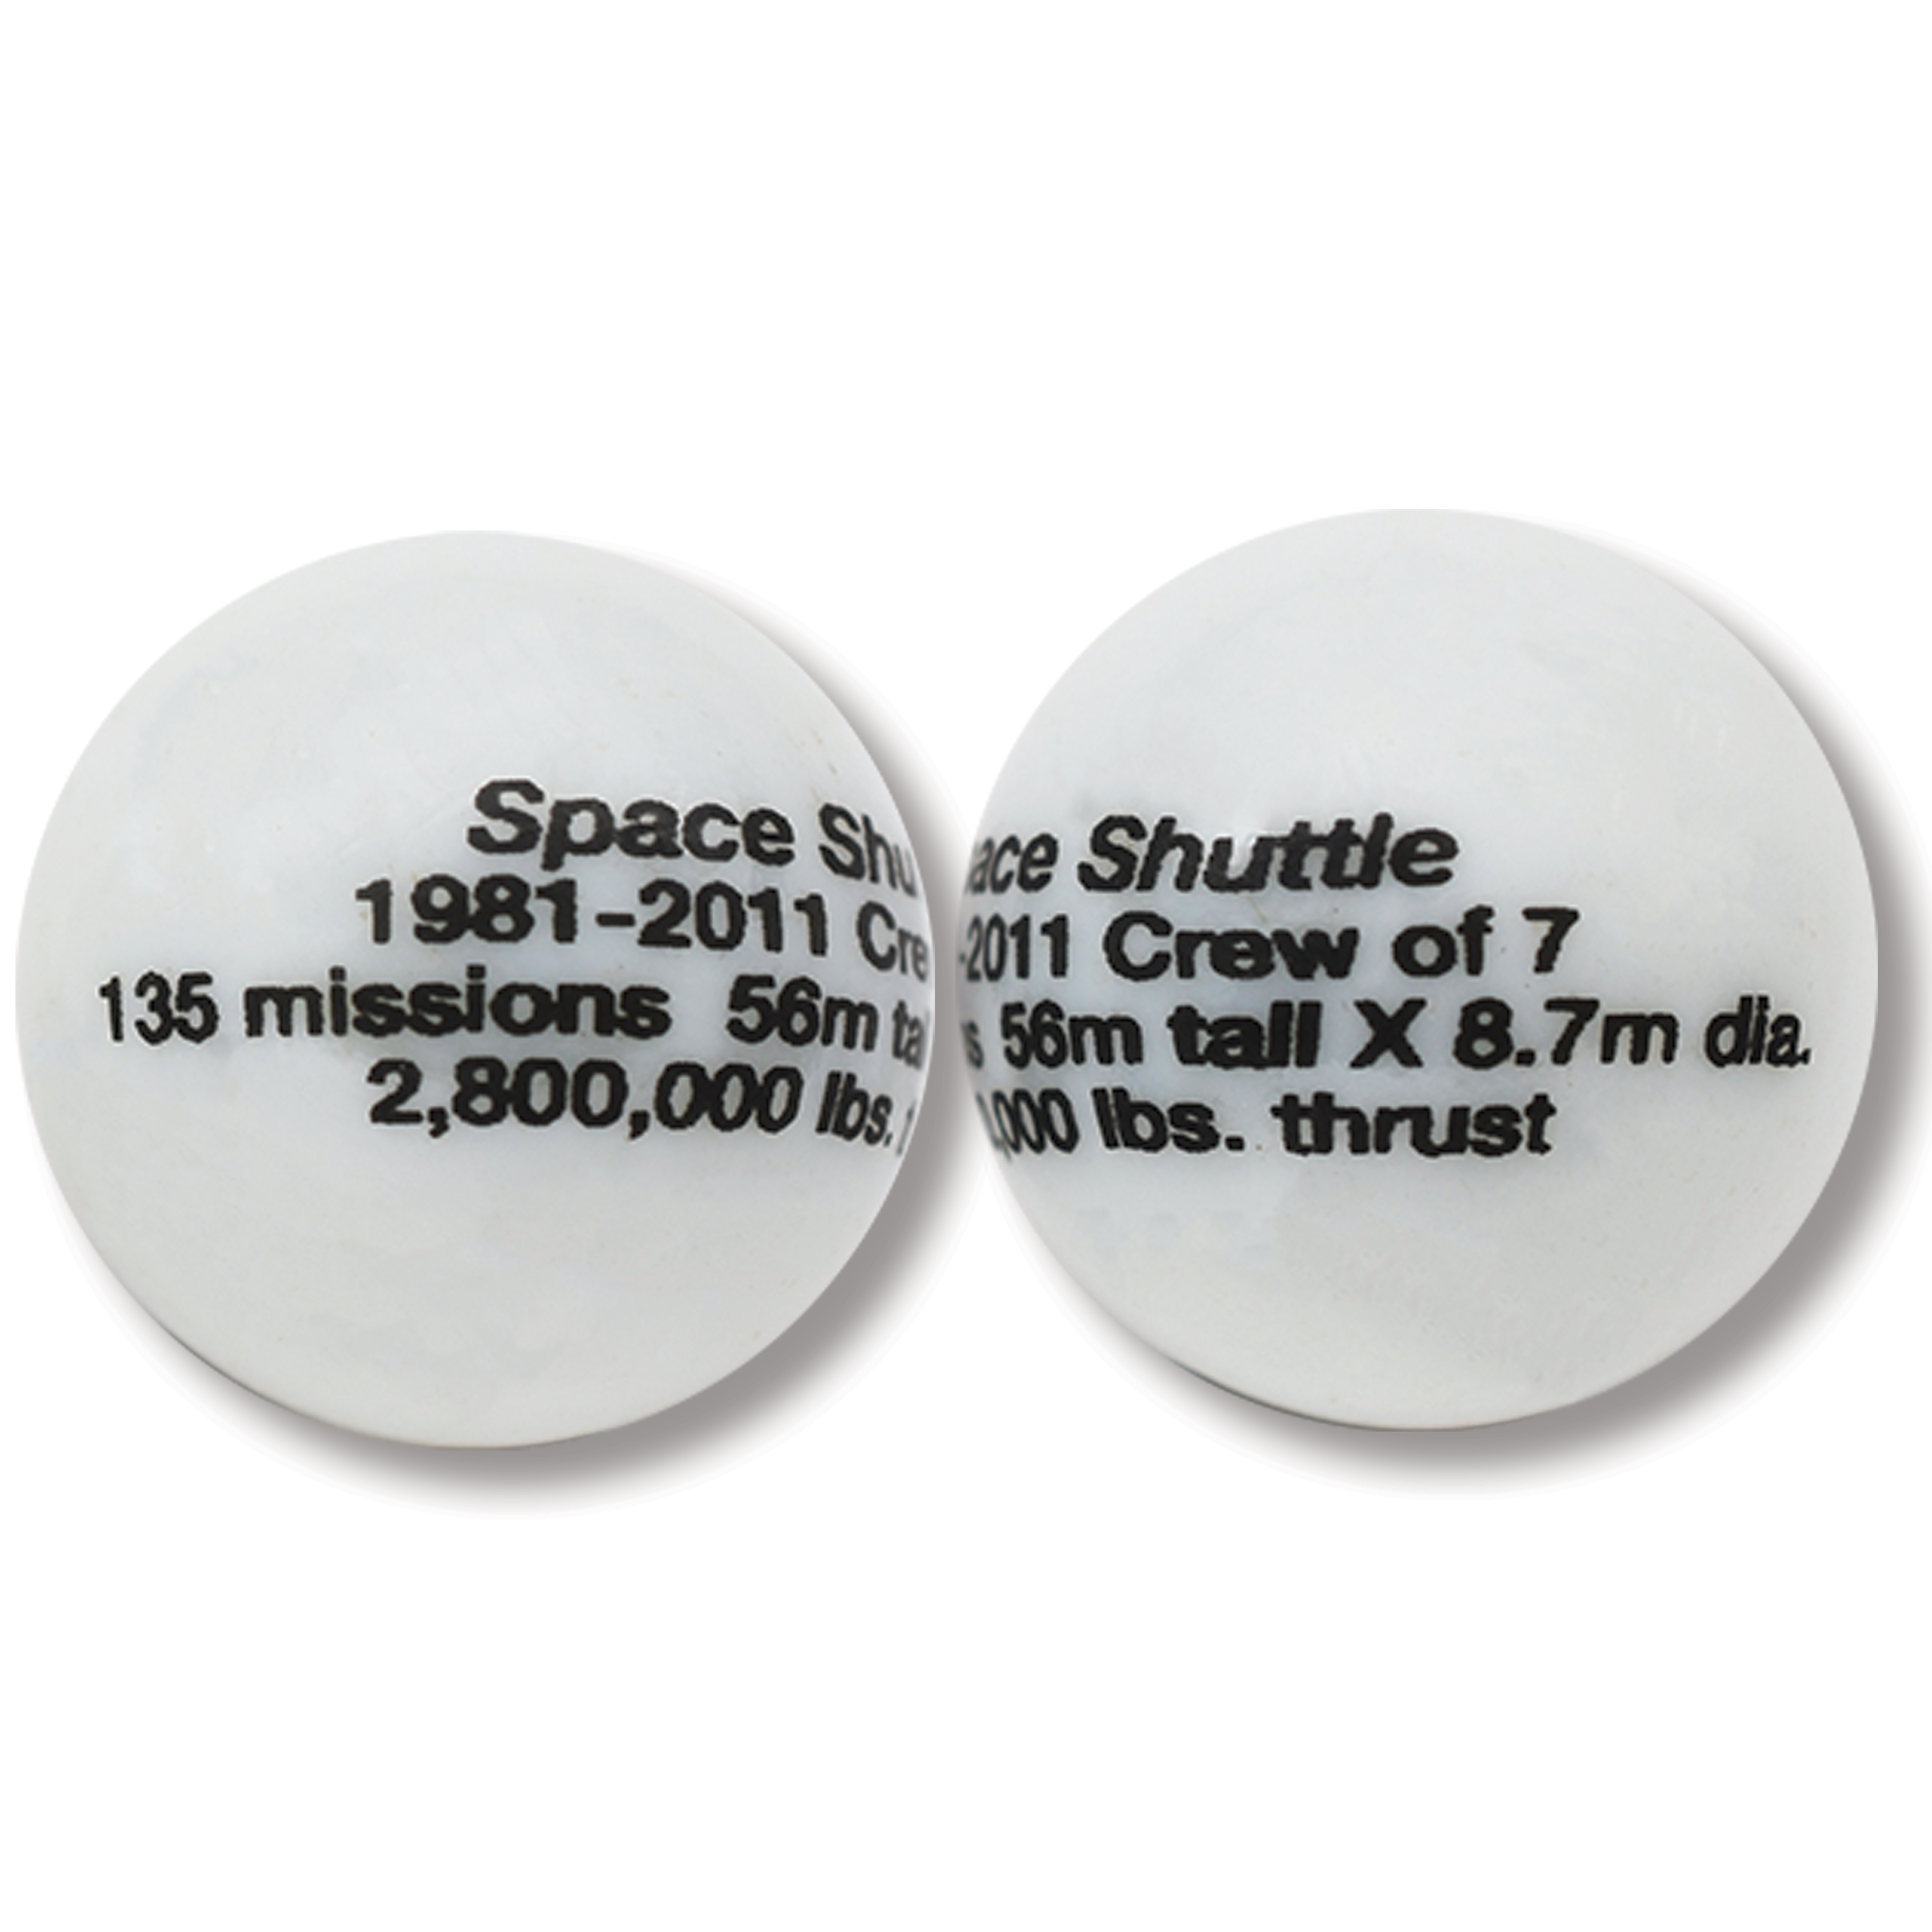 Historical NASA Spaceship Marbles - 1